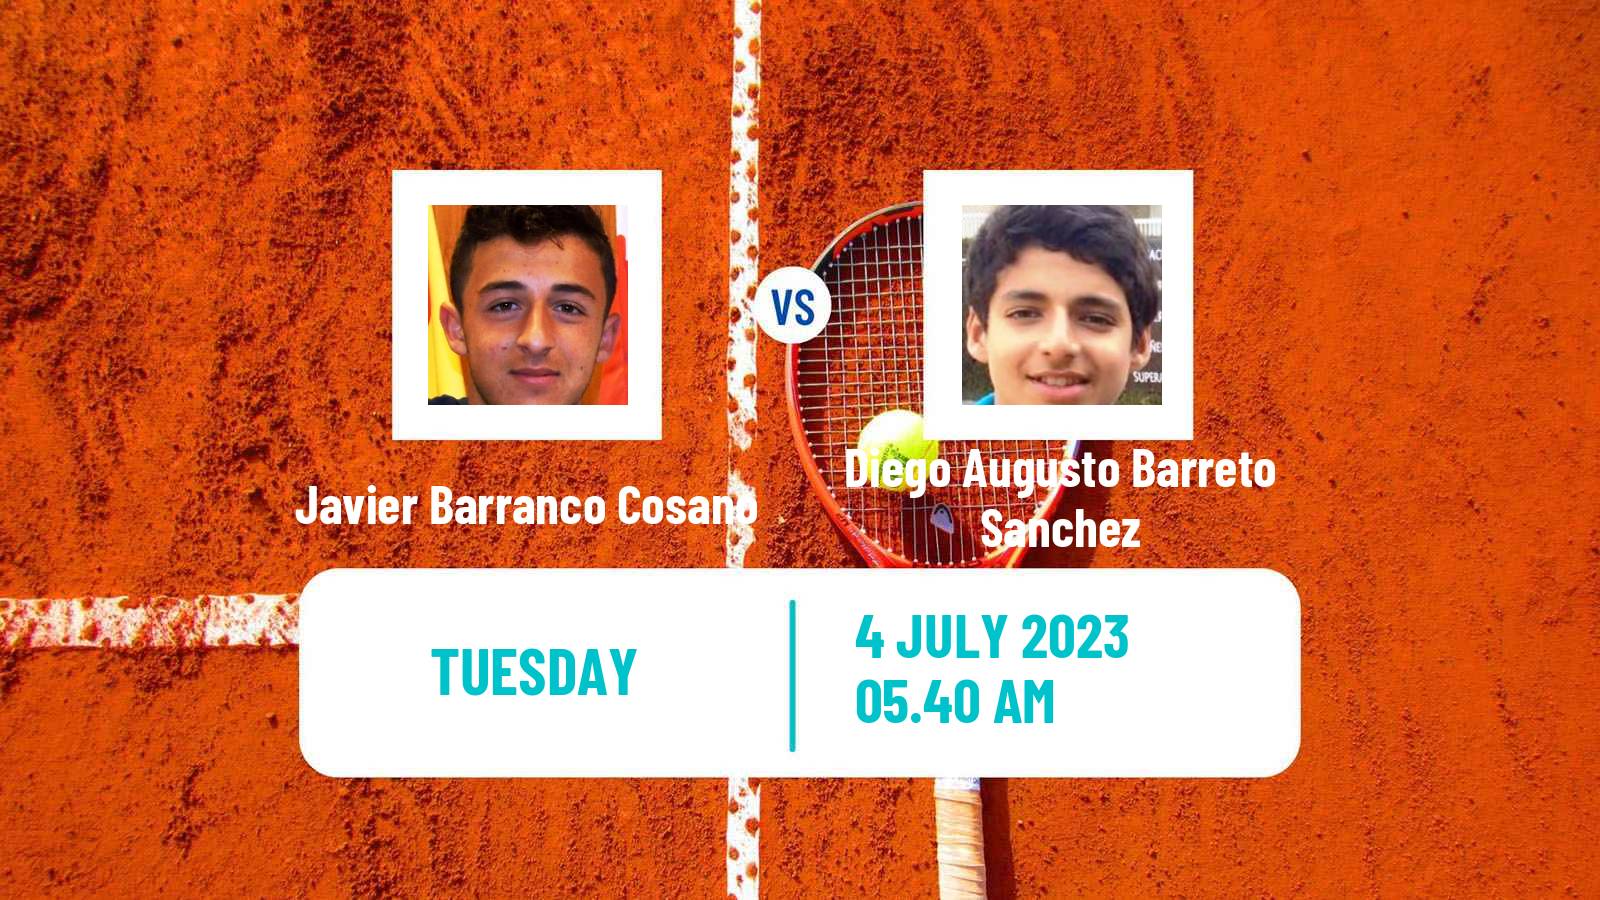 Tennis ITF M25 Getxo Men Javier Barranco Cosano - Diego Augusto Barreto Sanchez